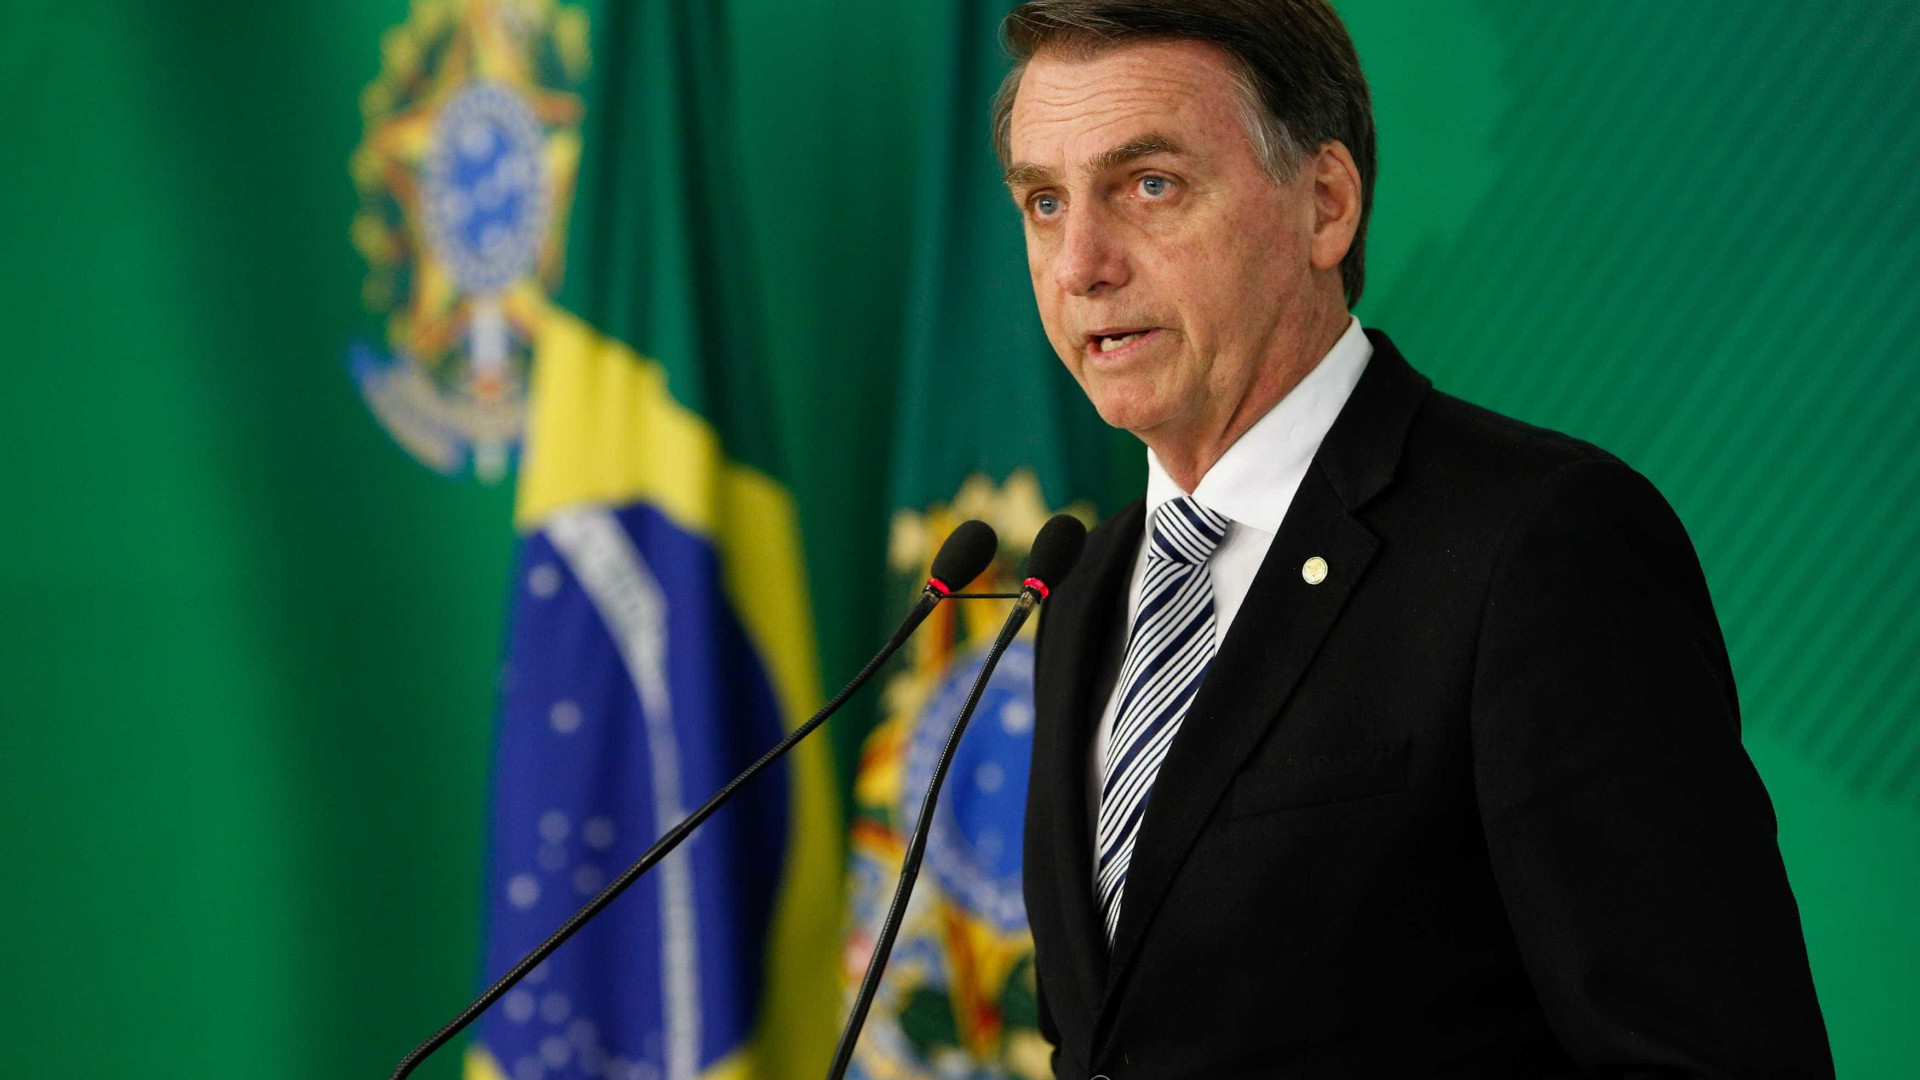 De dez promessas feitas, Bolsonaro dependerá do Congresso em oito